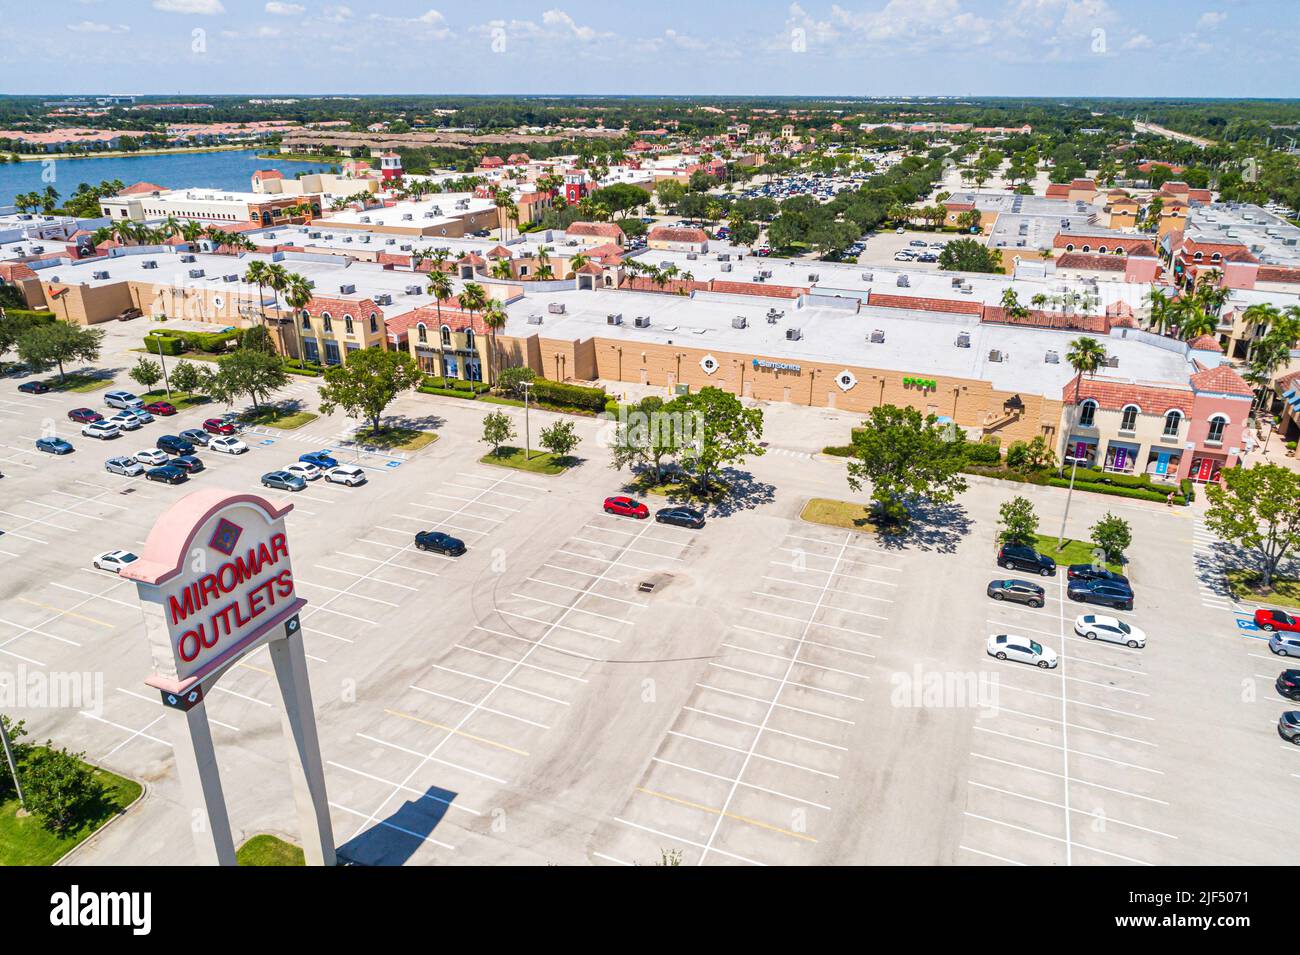 Estero Florida, Miromar Outlets marque de designer usine de magasins d'usine centre commercial, aérien au-dessus de la vue, parking Banque D'Images